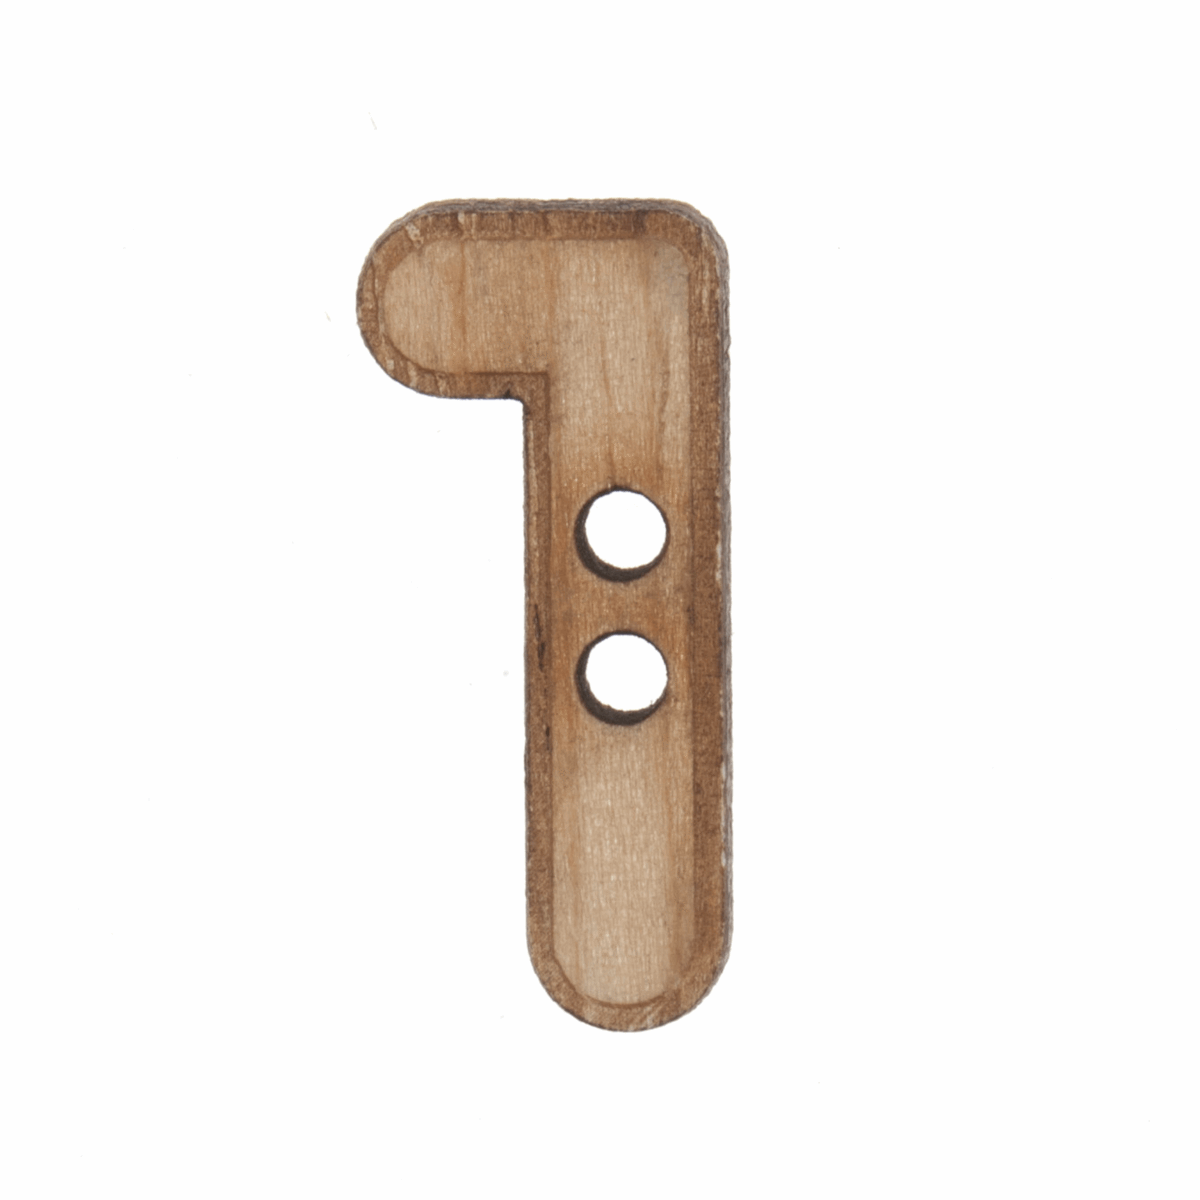 Trimits Wooden Number Button (1) - 22mm/35 lignes